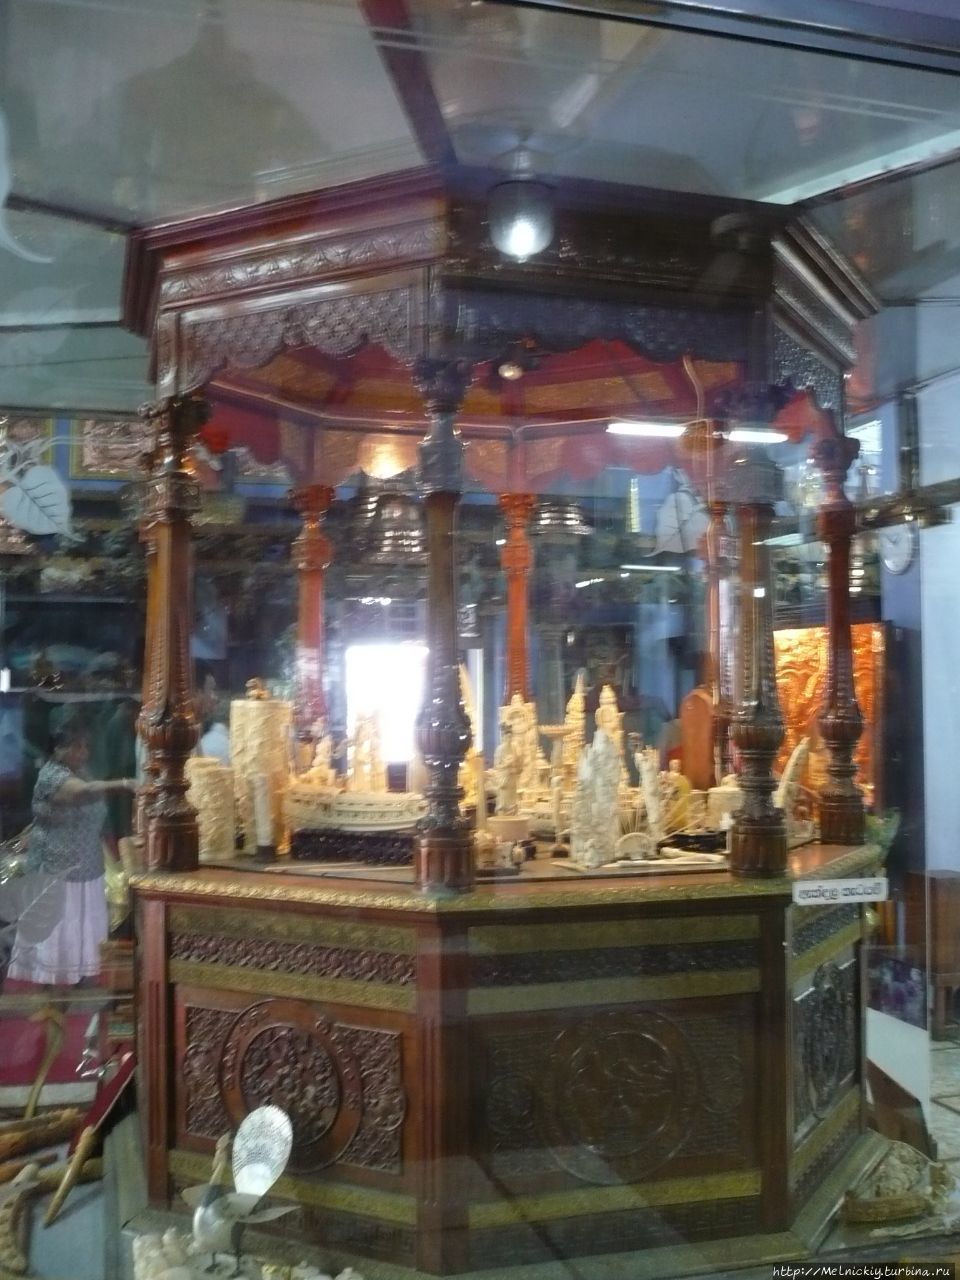 Храм Гангарамая